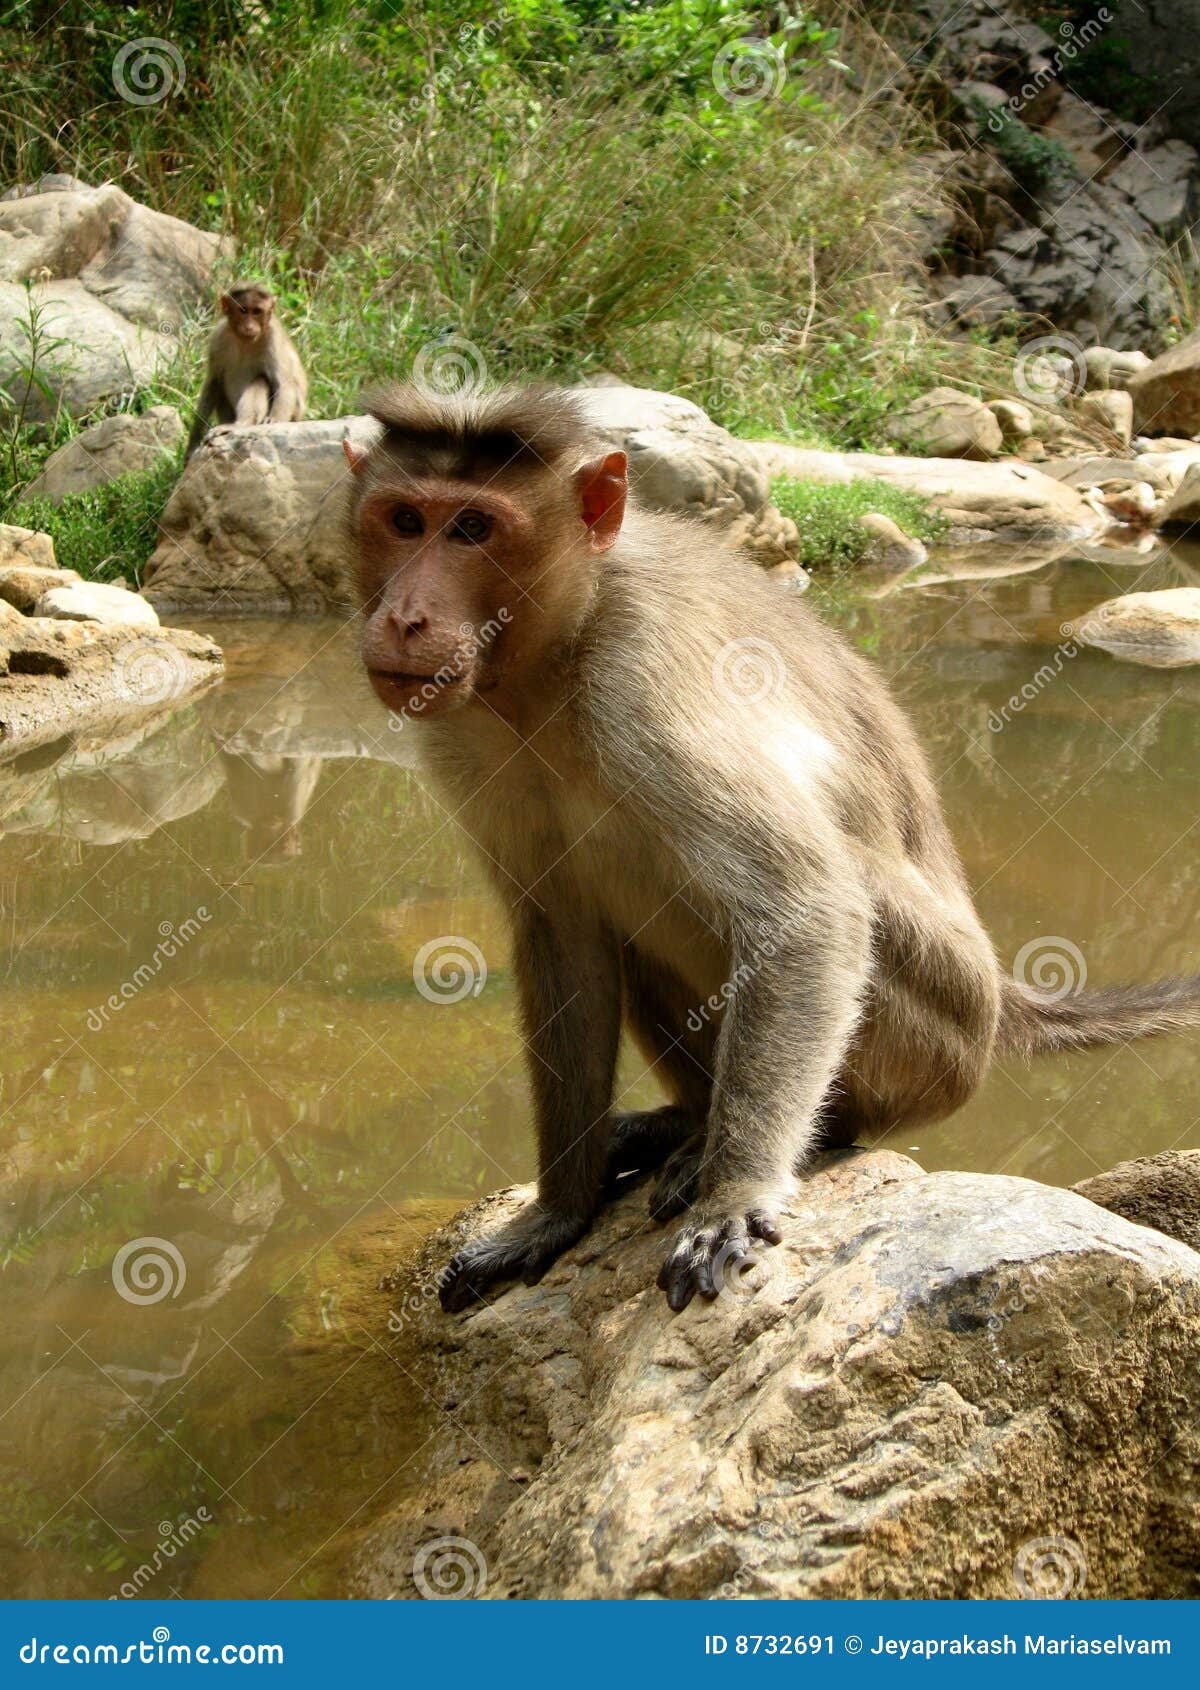  Strong monkey  stock image Image of large monkey  sitting 